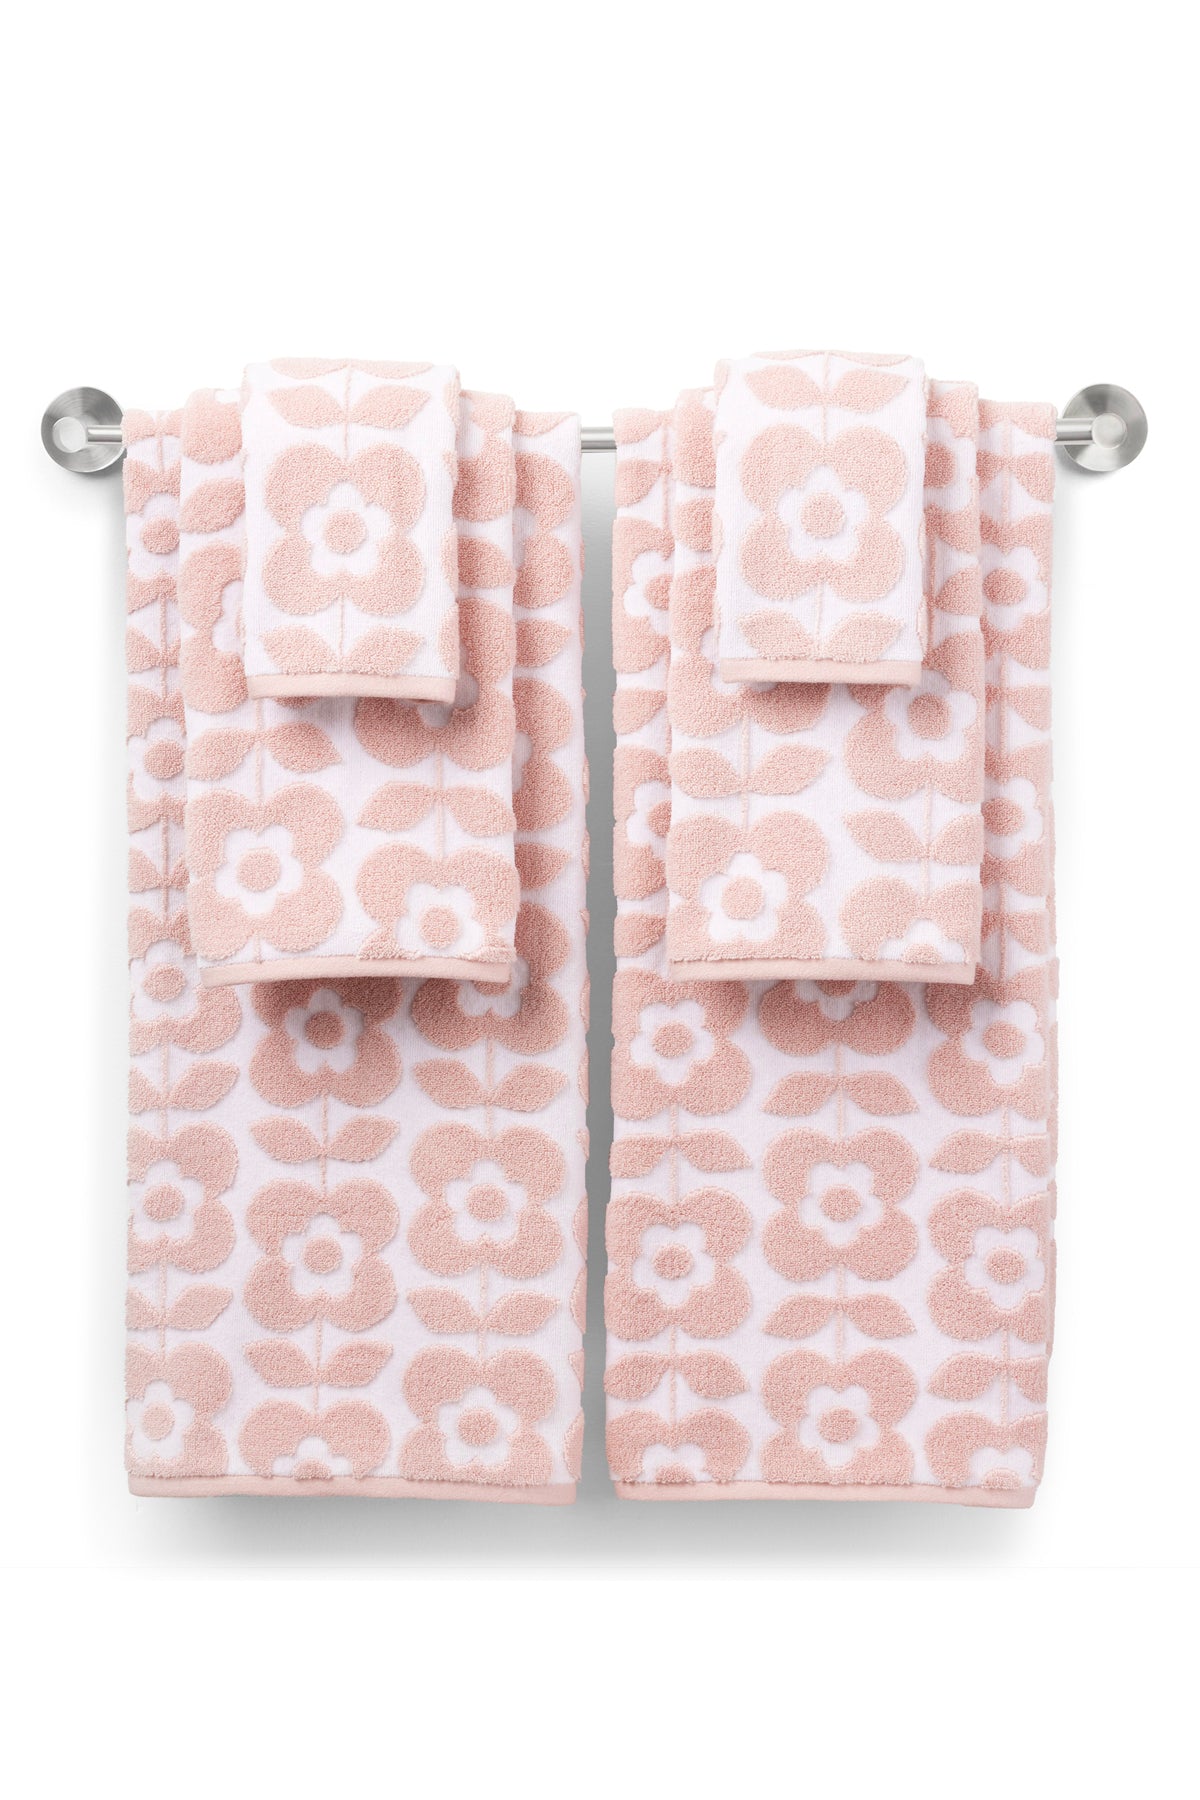 Daisy 6-Piece Towel Set: The Retro Towel